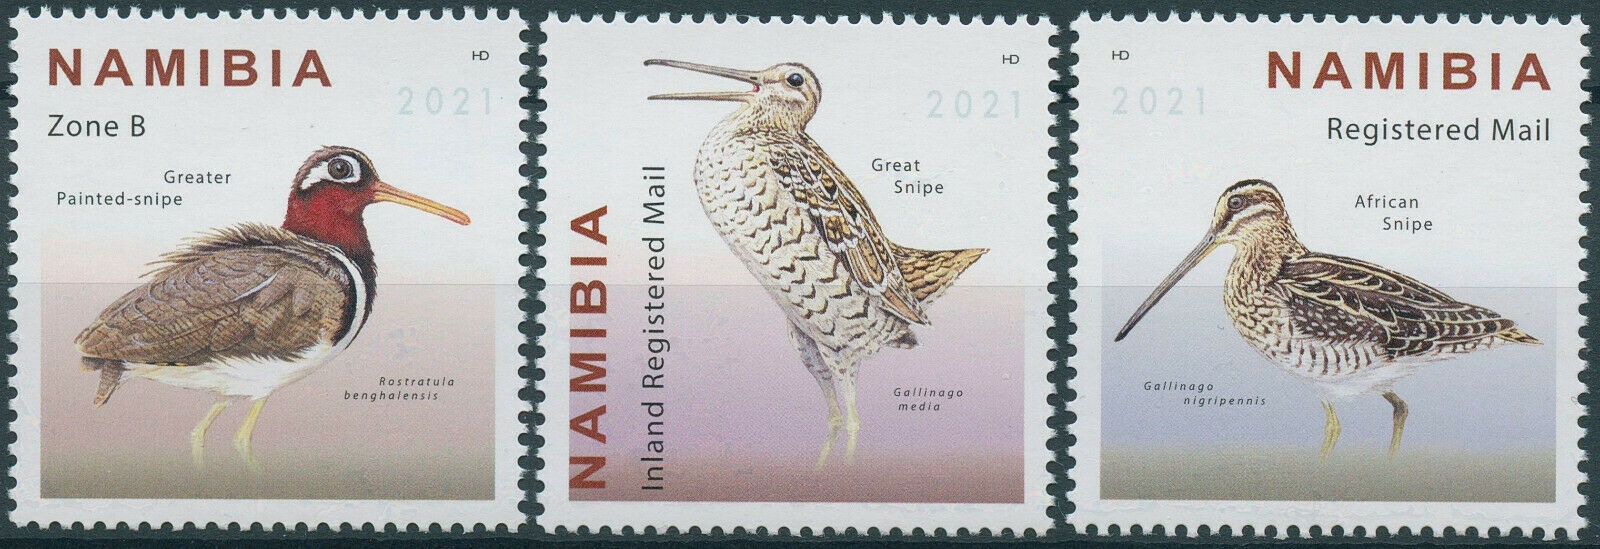 Namibia 2021 MNH Birds on Stamps Snipes Great African Snipe 3v Set